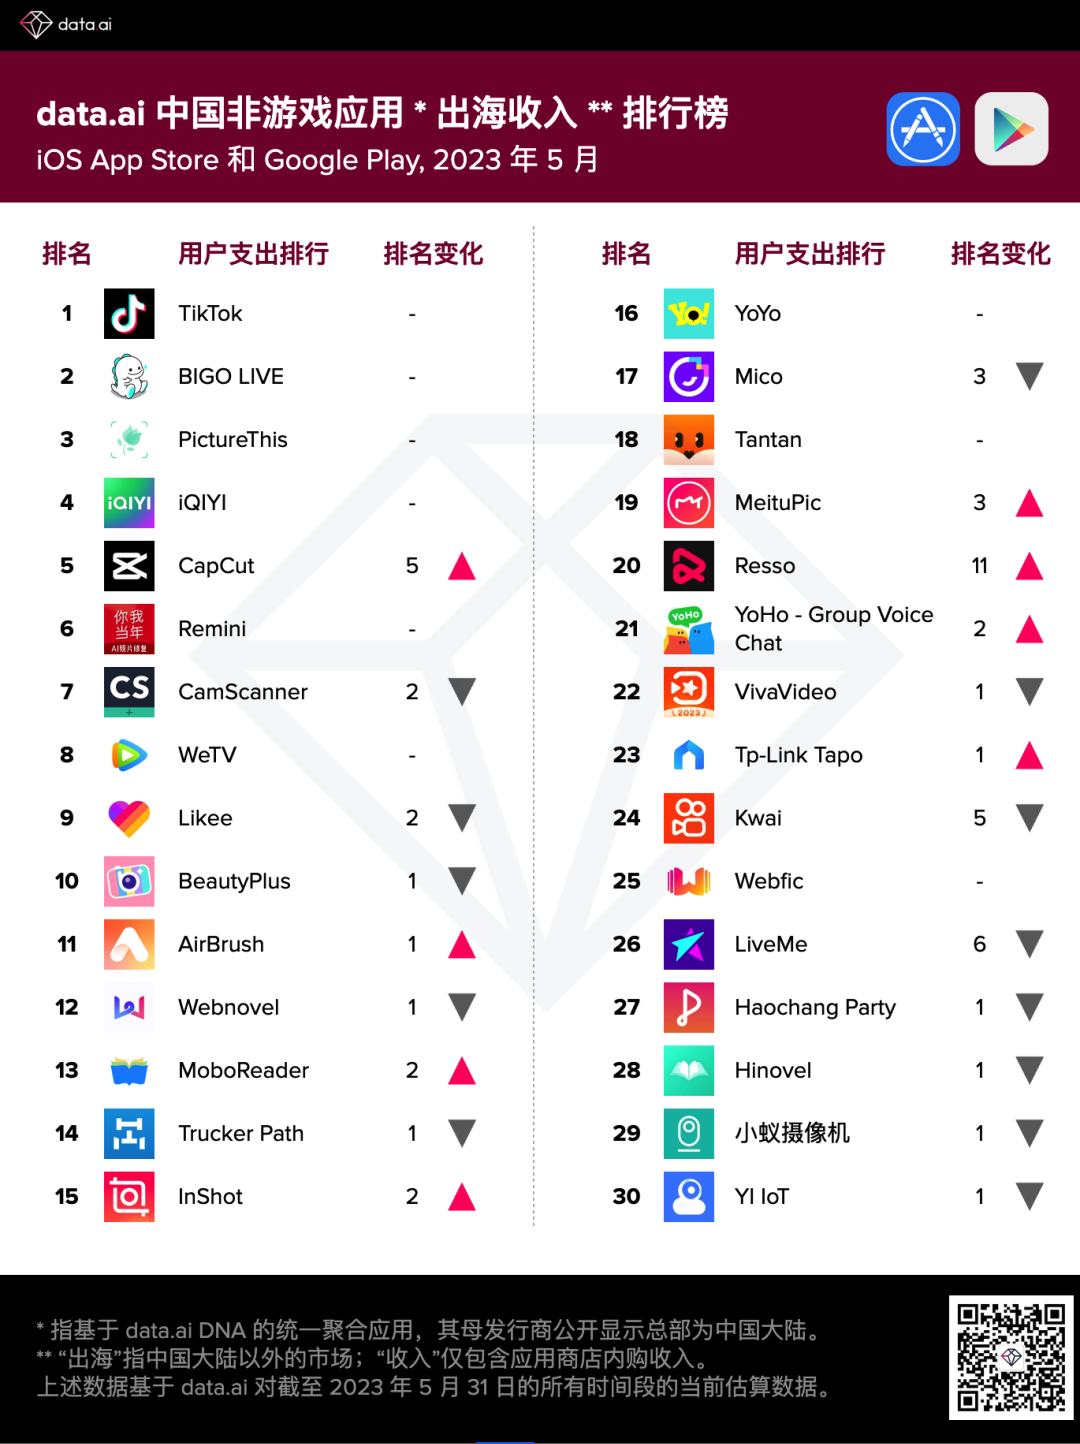 data.ai发布5月份中国非游戏厂商及应用出海收入30强 字节跳动、腾讯(00700)等霸榜前五